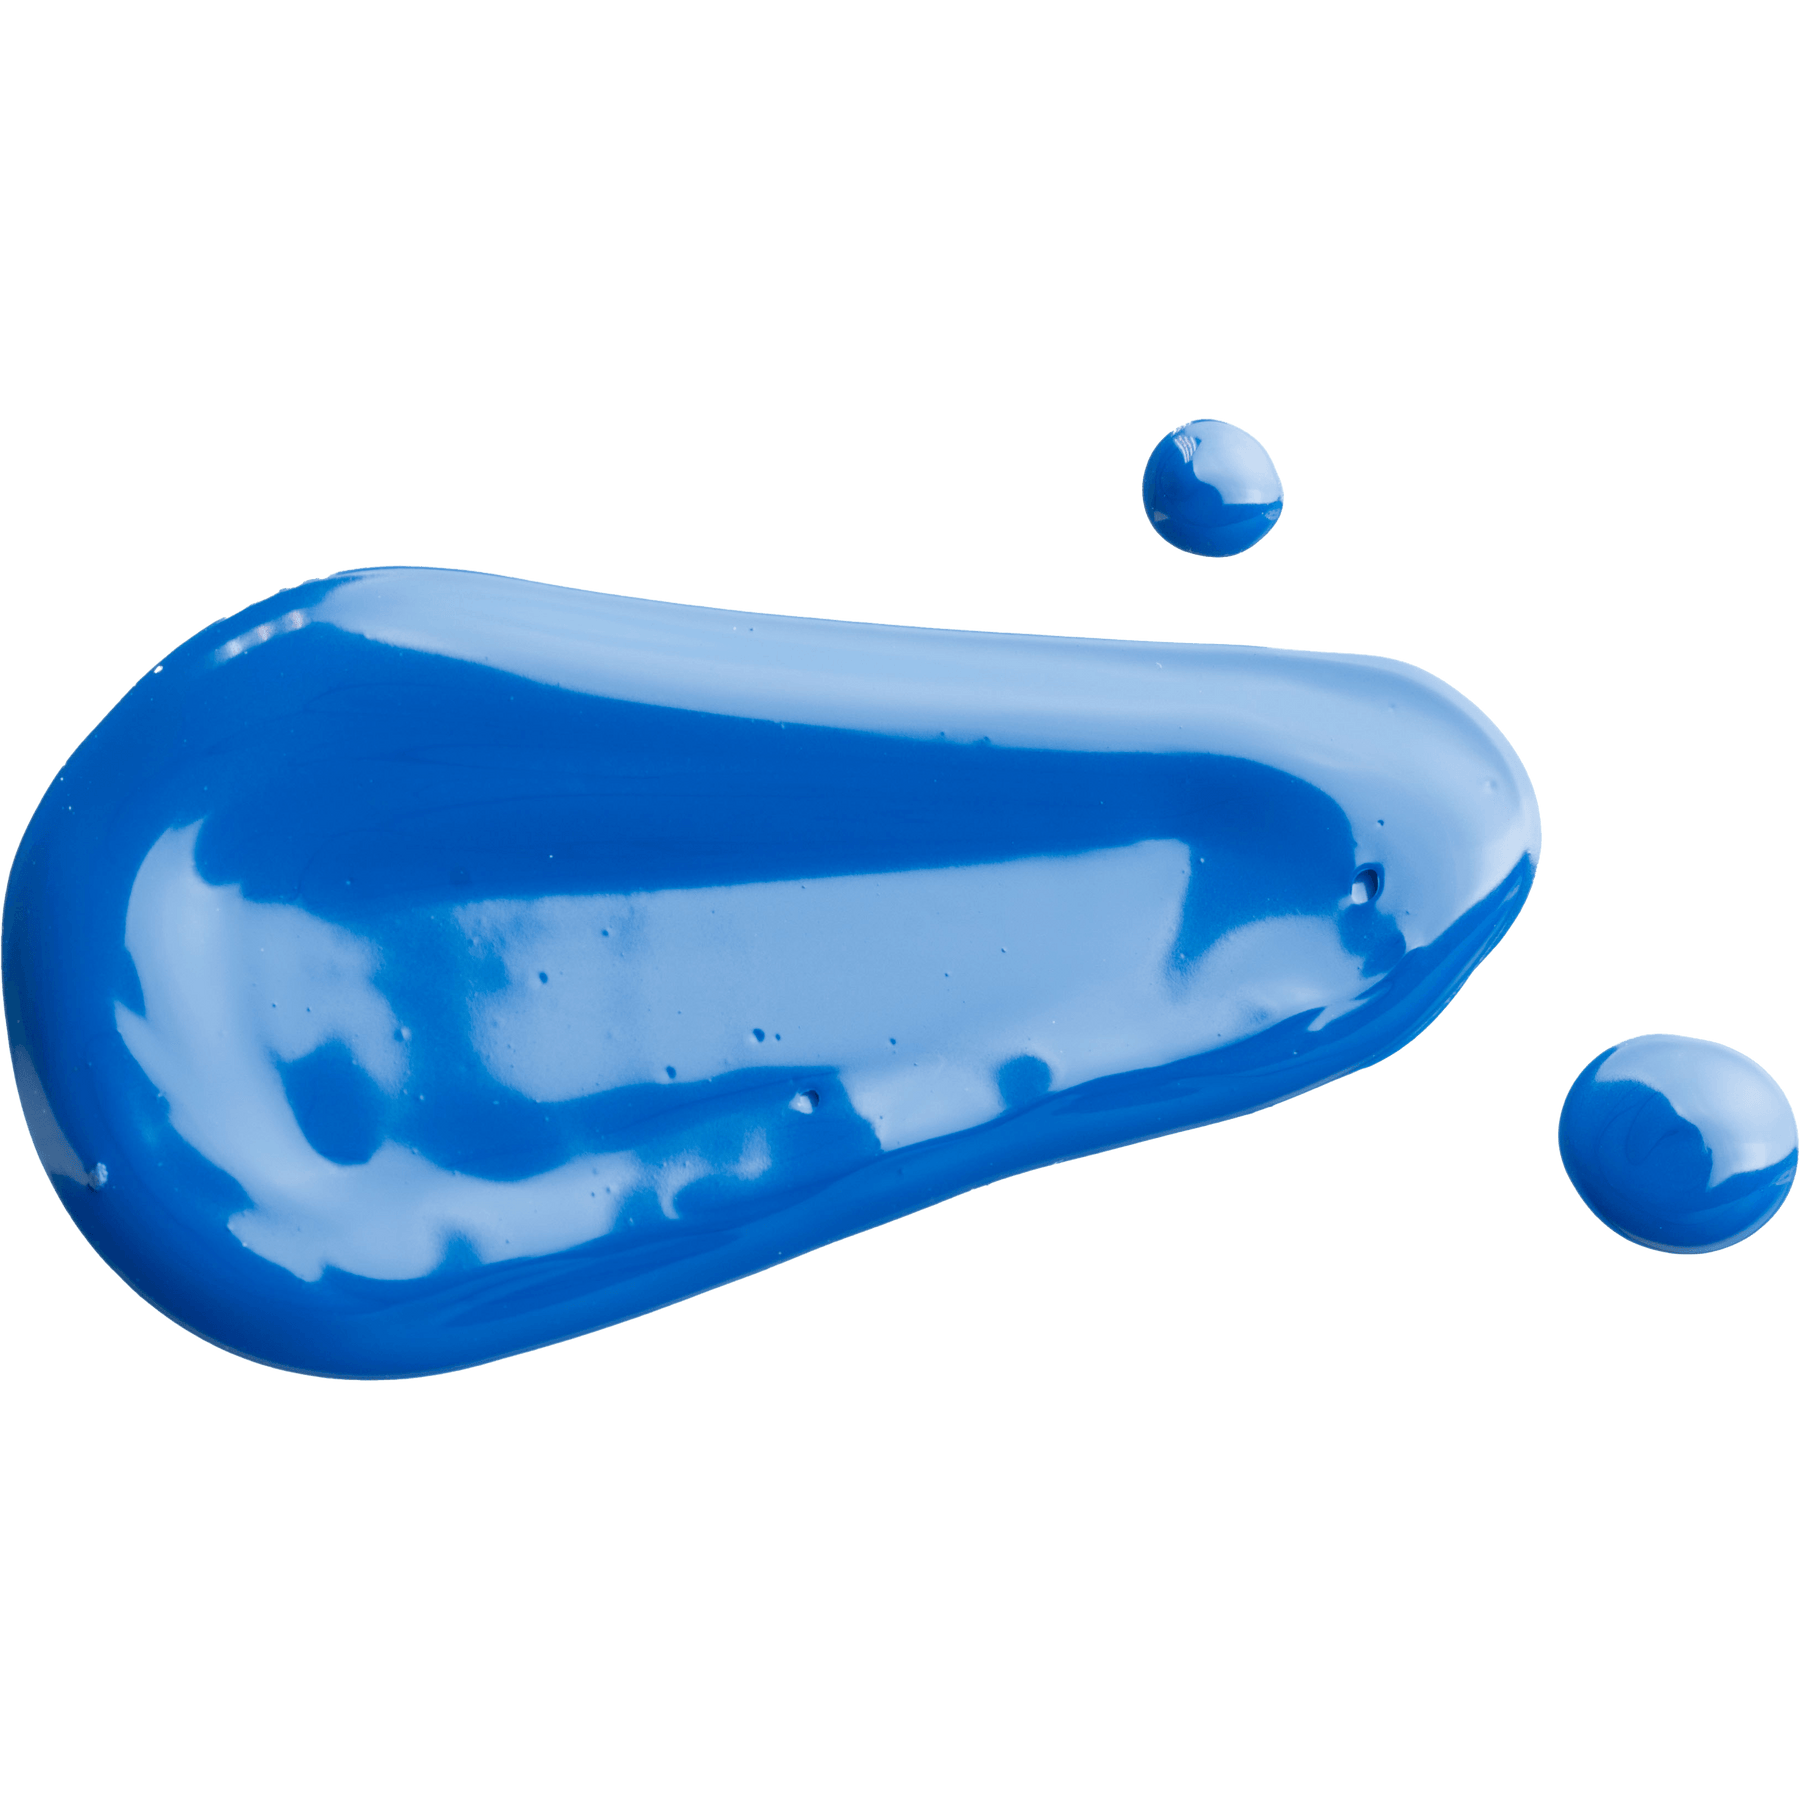 Tri-Art Liquids - Manganese Blue (Hue) - Tri-Art Mfg.